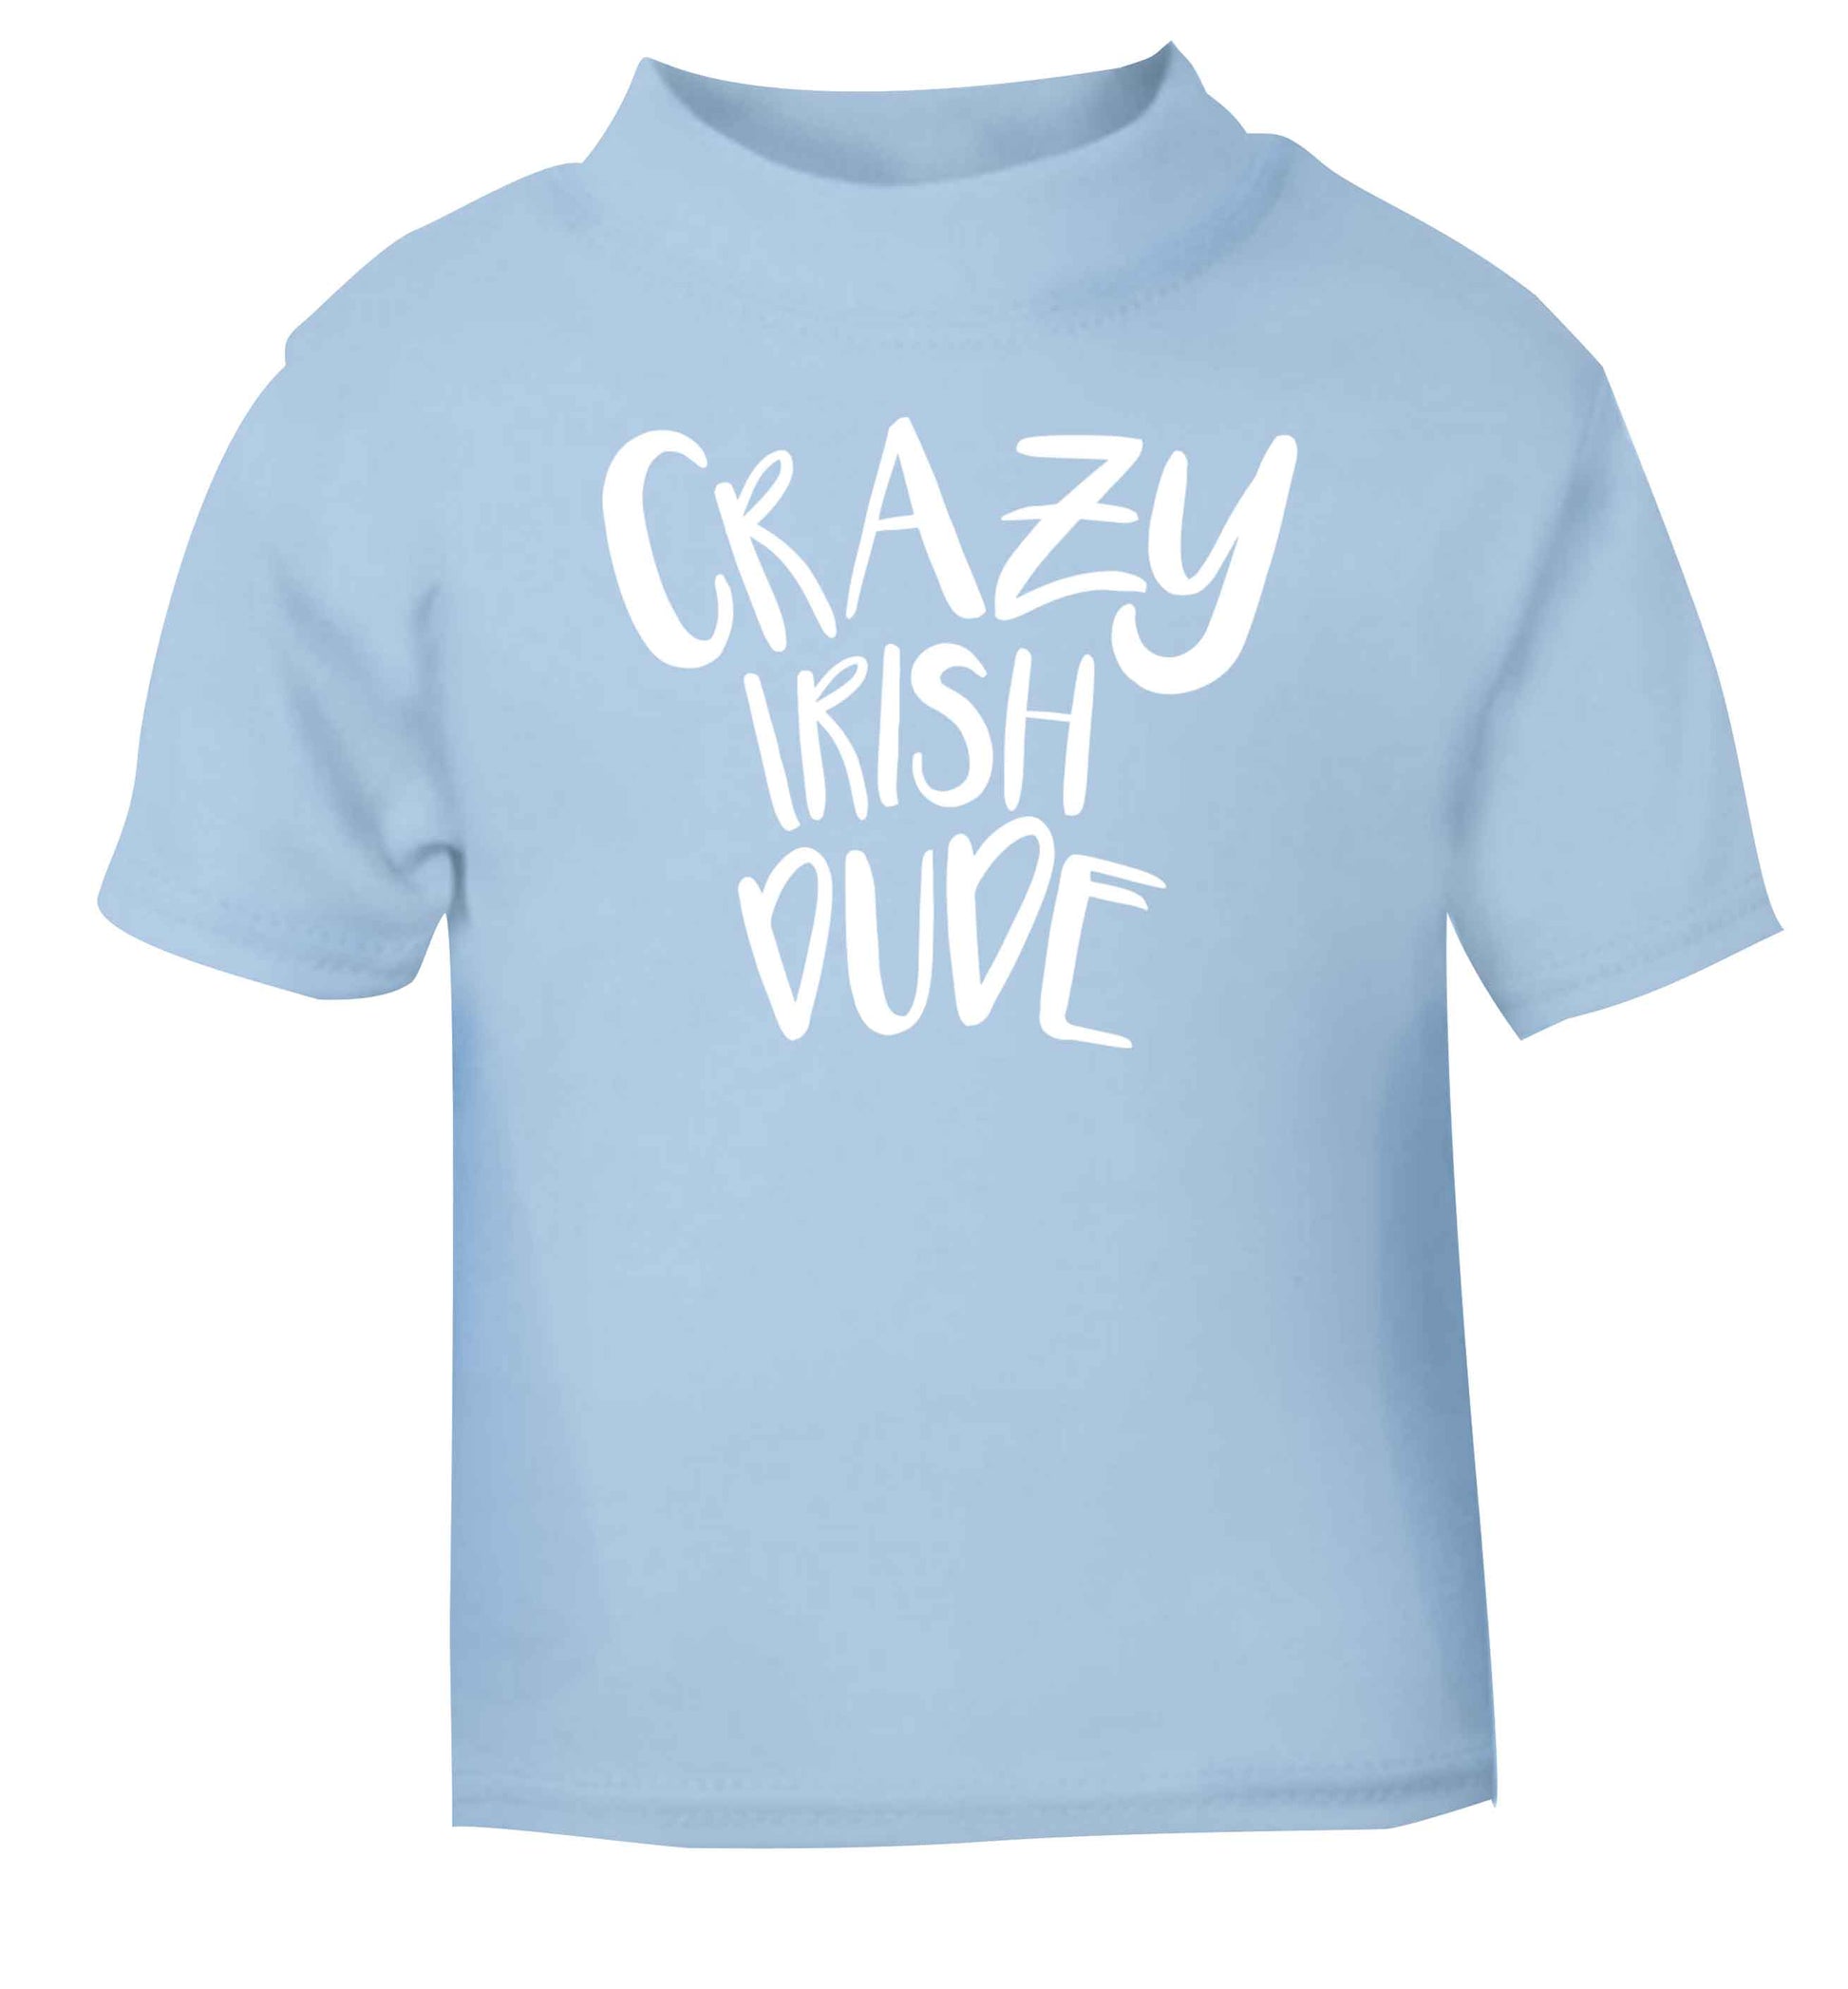 Crazy Irish dude light blue baby toddler Tshirt 2 Years